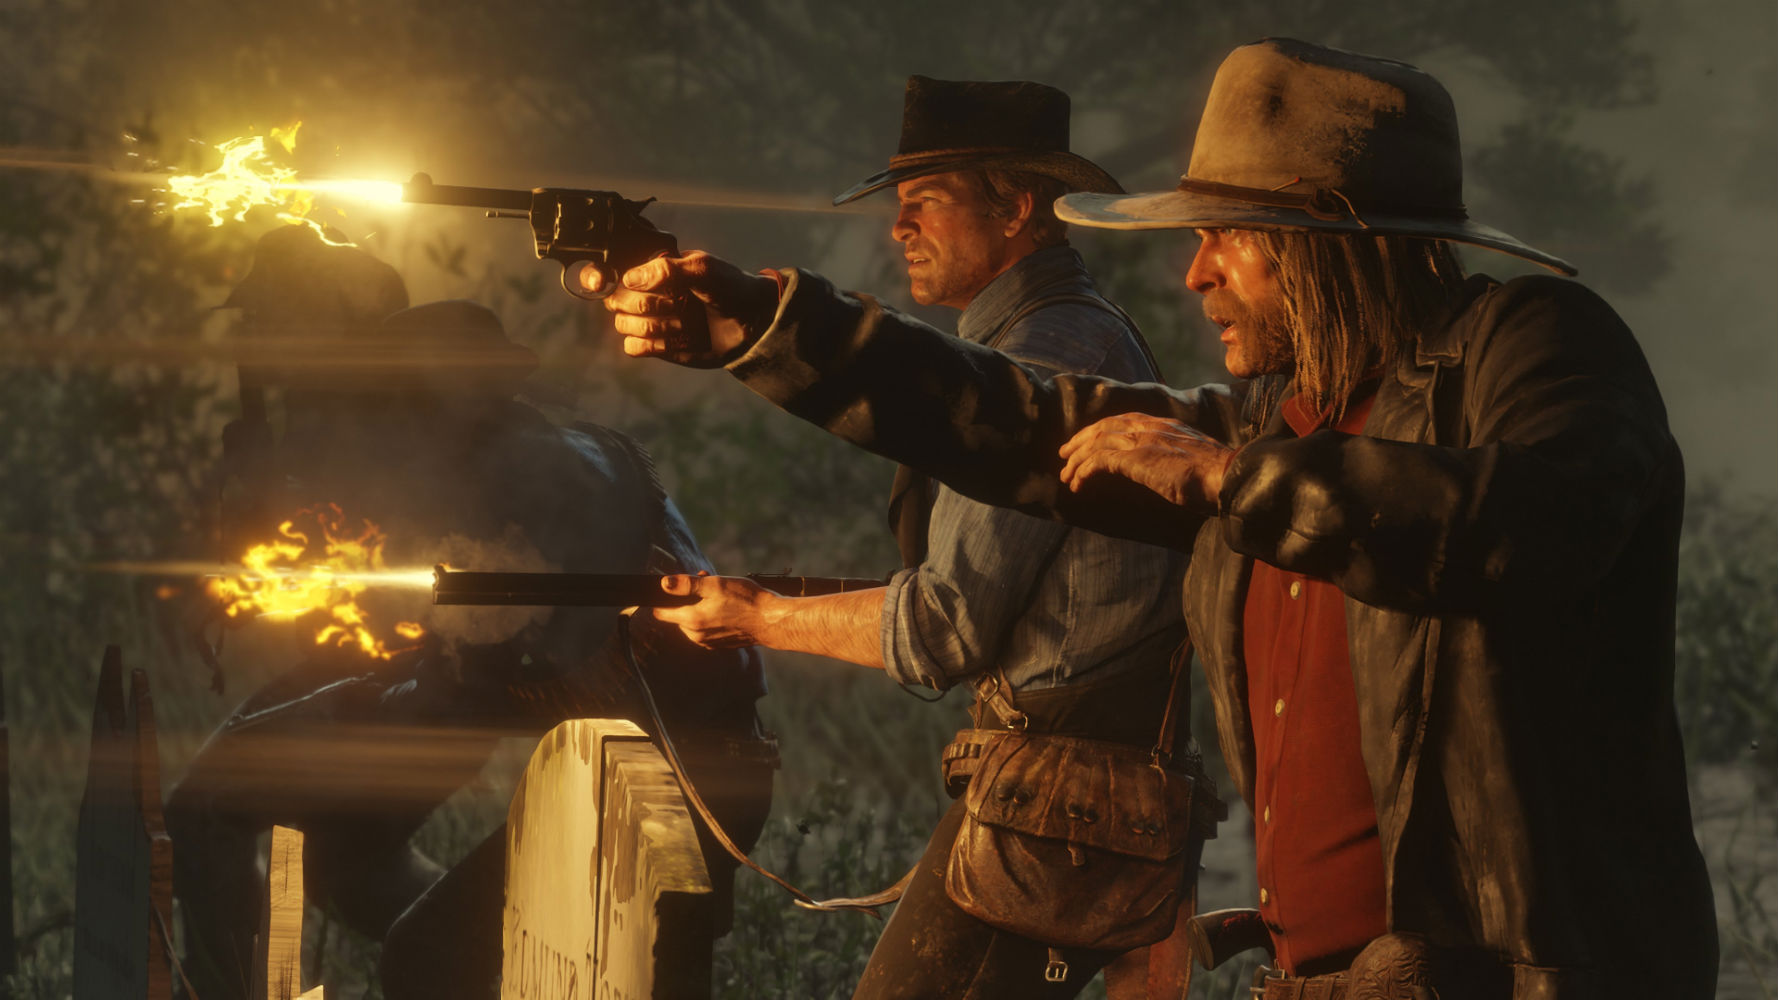 Bang Bang: conheça o Velho Oeste, período de Red Dead Redemption 2